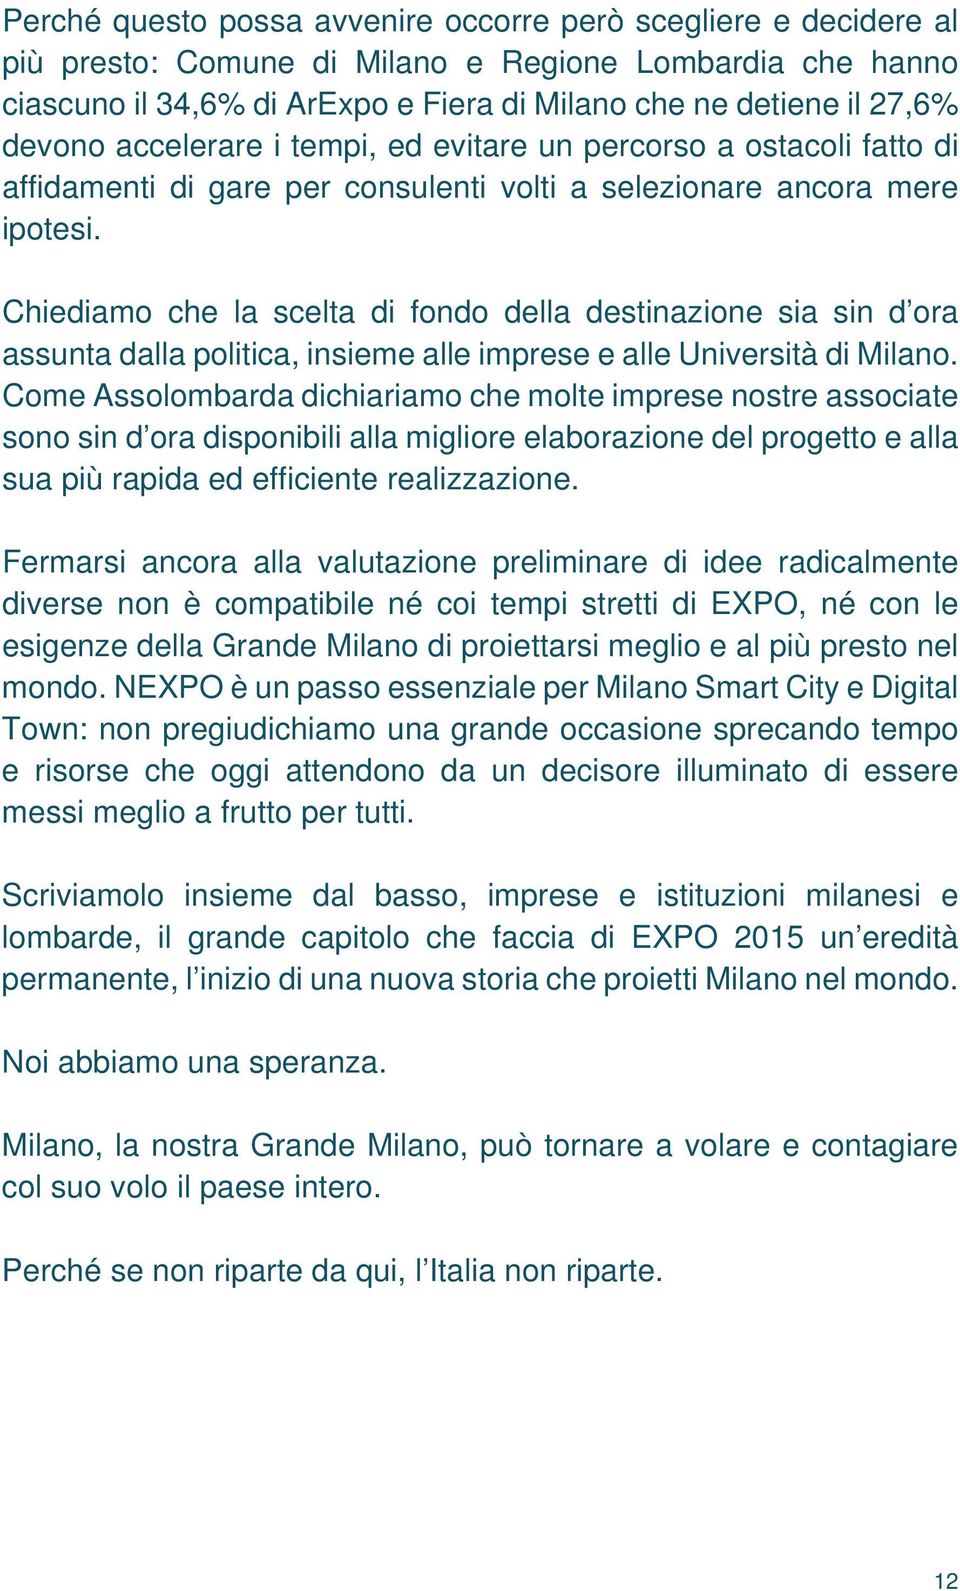 Chiediamo che la scelta di fondo della destinazione sia sin d ora assunta dalla politica, insieme alle imprese e alle Università di Milano.